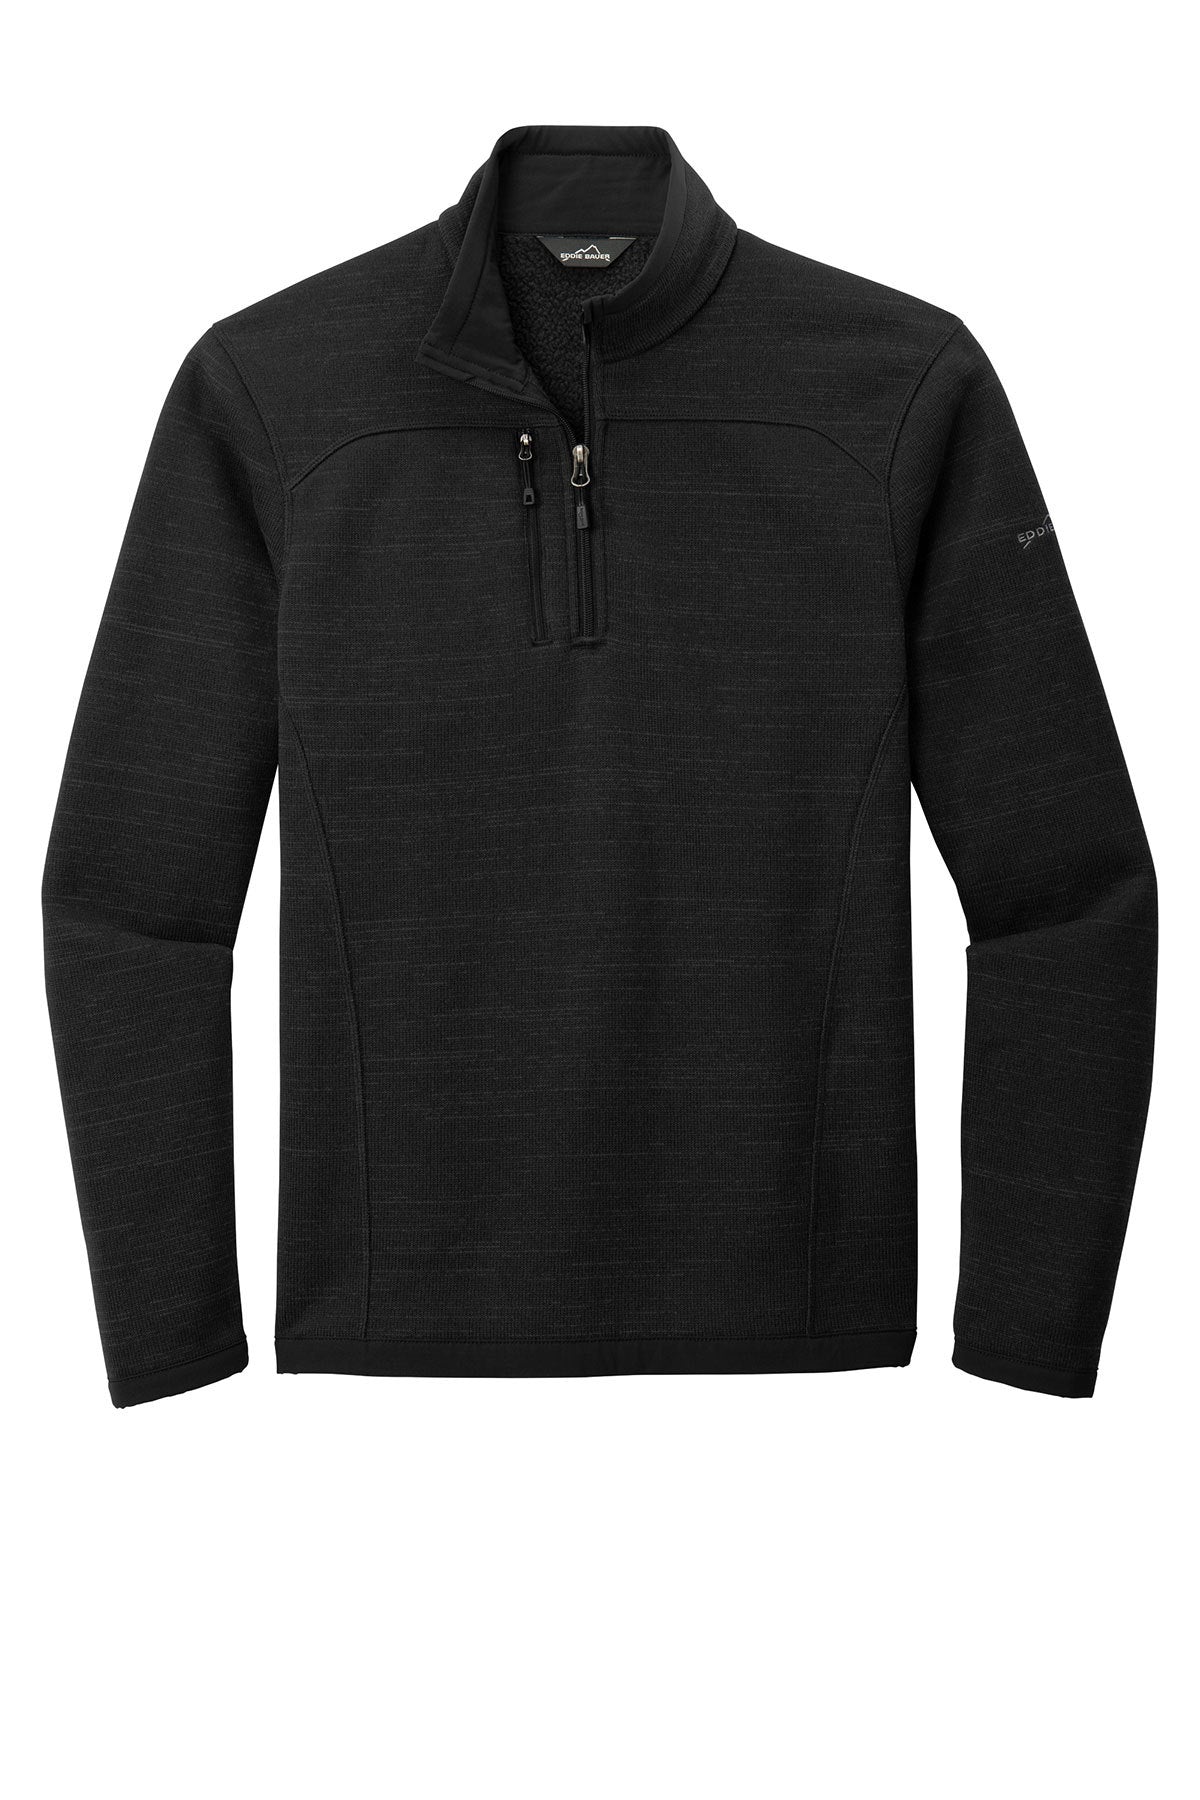 EB254 Eddie Bauer ® Sweater Fleece 1/4-Zip